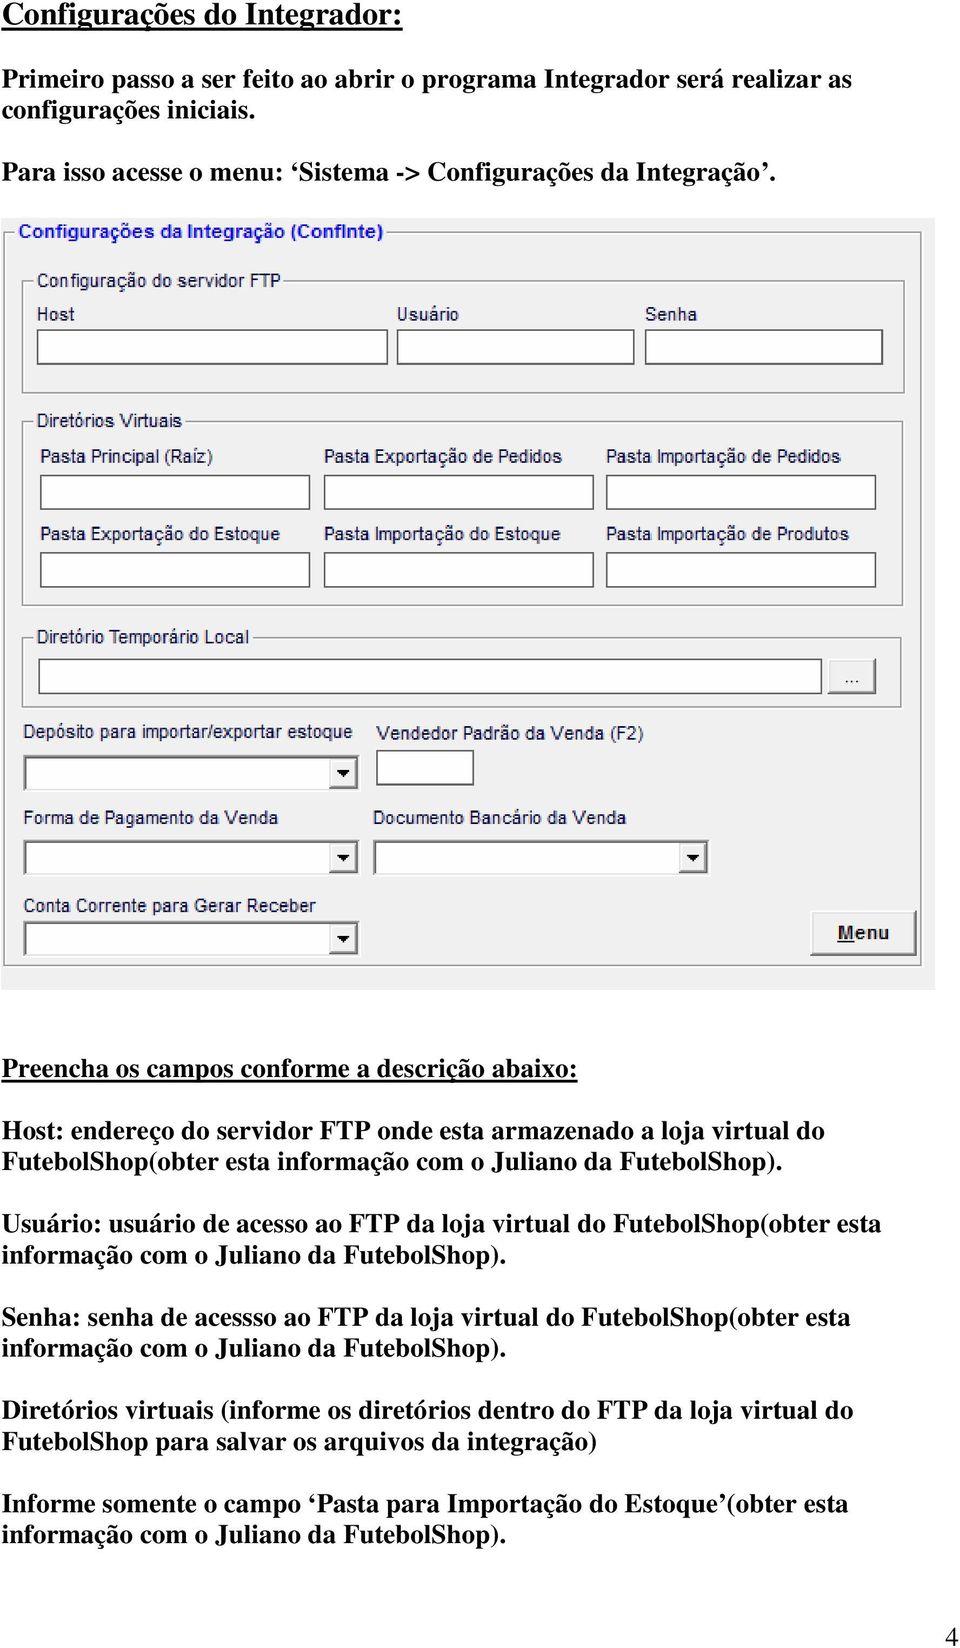 Usuário: usuário de acesso ao FTP da loja virtual do FutebolShop(obter esta informação com o Juliano da FutebolShop).